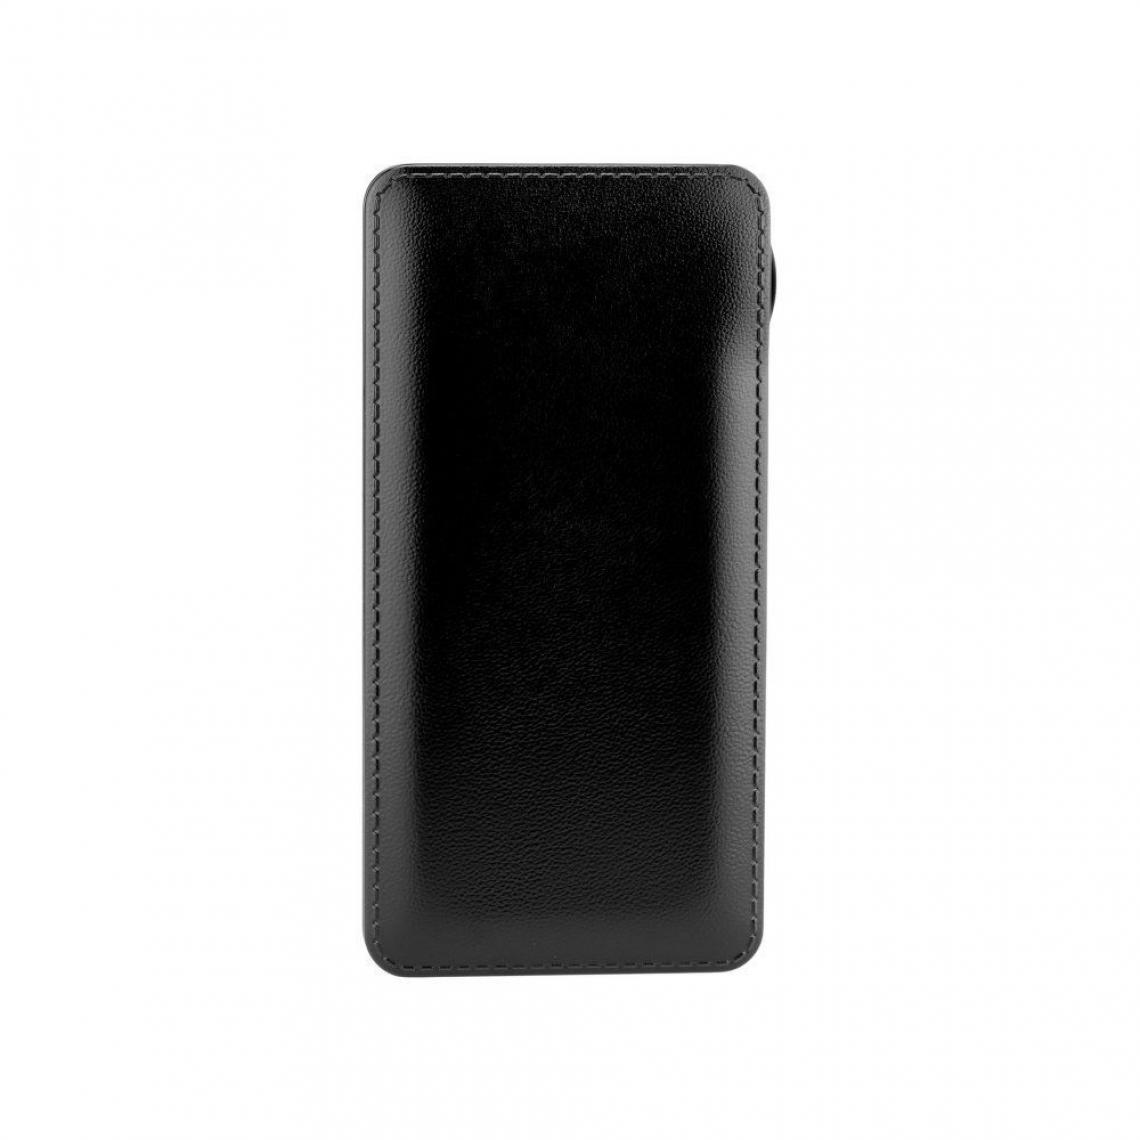 Ozzzo - Chargeur batterie externe 30000 mAh powerbank ozzzo noir pour Sony Xperia Z4 Tablet - Autres accessoires smartphone